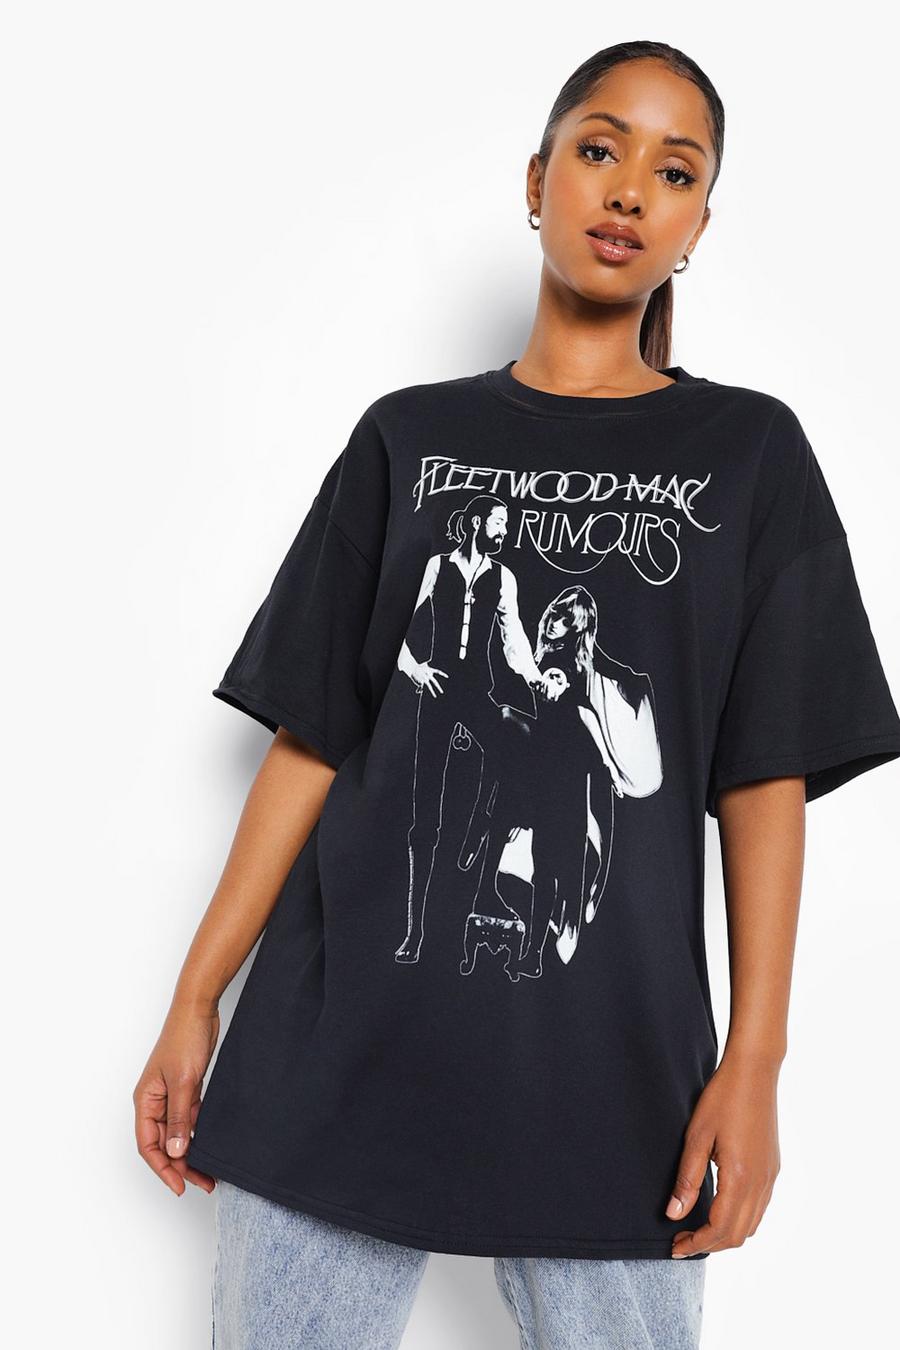 Camiseta Premamá con estampado de Fleetwood Mac, Black